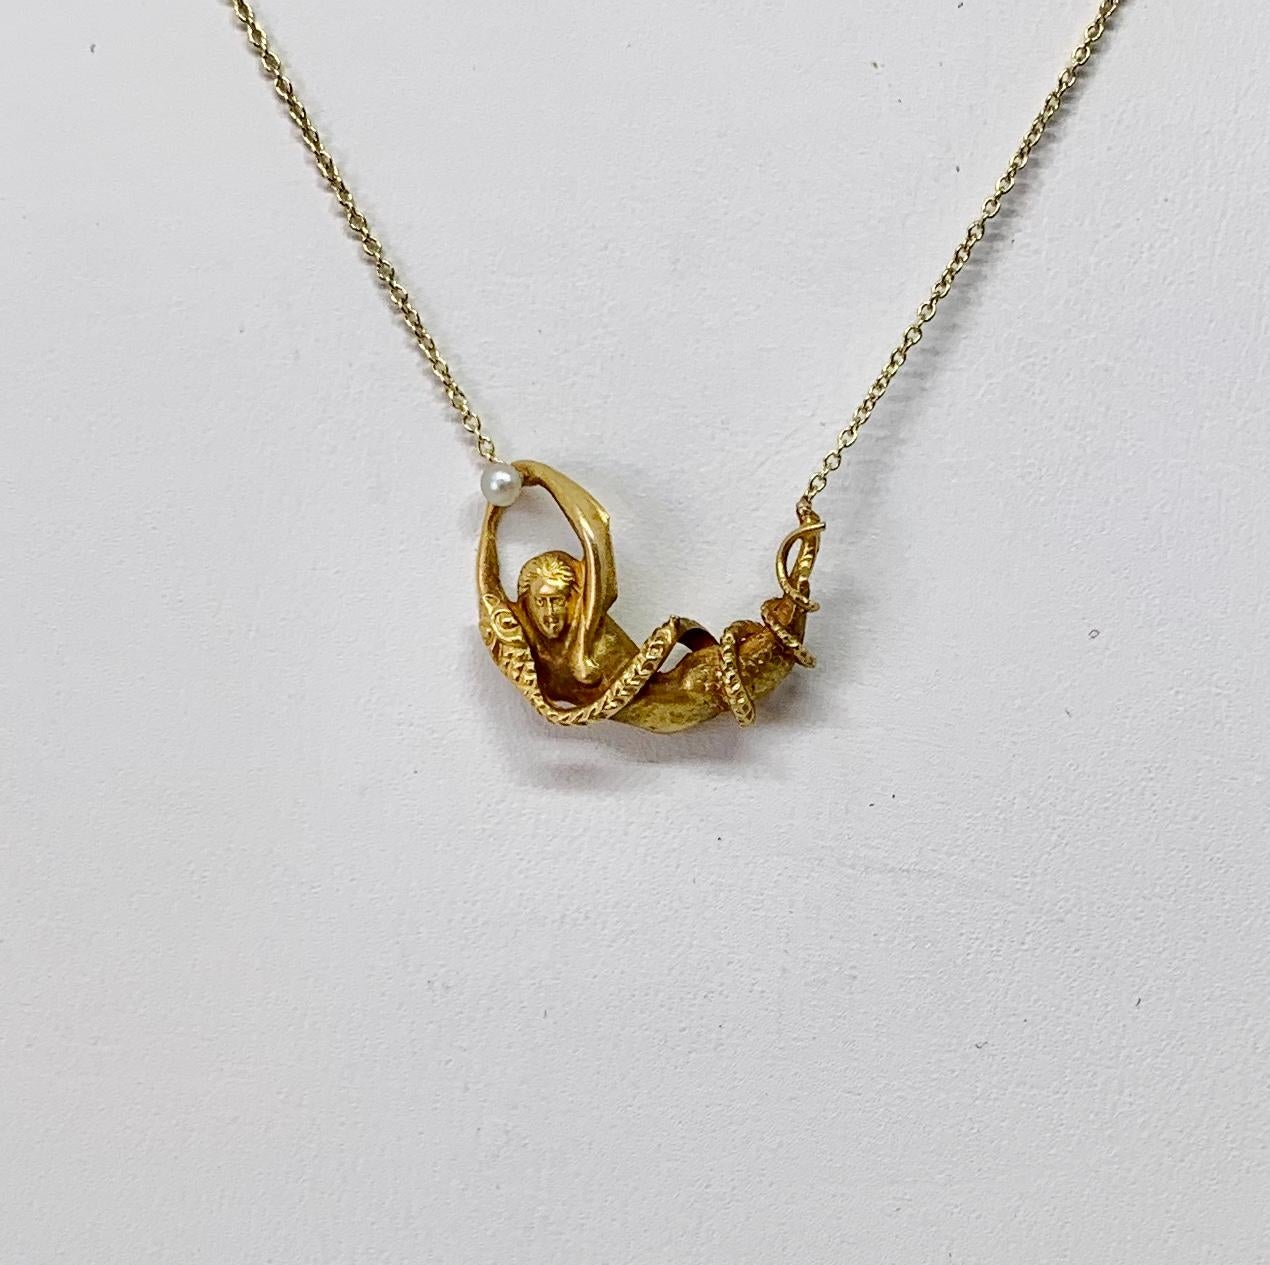 Il s'agit d'un rare collier antique victorien à pendentif sirène et serpent représentant un serpent enroulé autour d'une sirène tenant une perle dans sa main.  Il s'agit d'une imagerie extraordinaire dans ce bijou ancien qui a plus de 100 ans.  Les